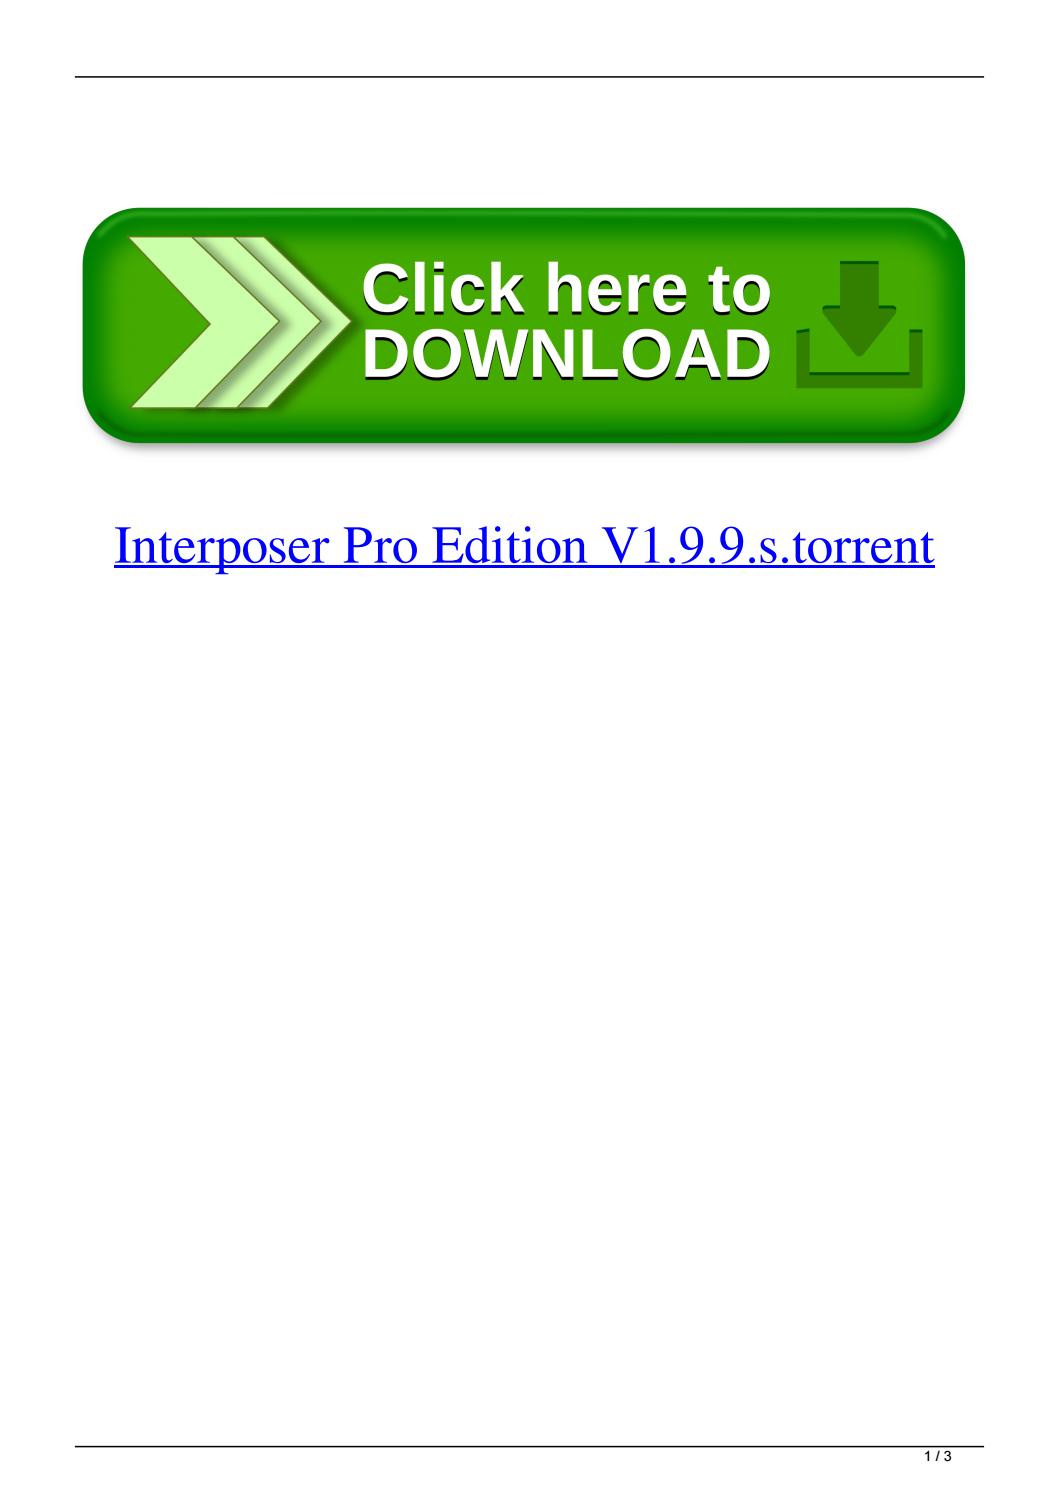 Interposer pro r13 keygen torrent free